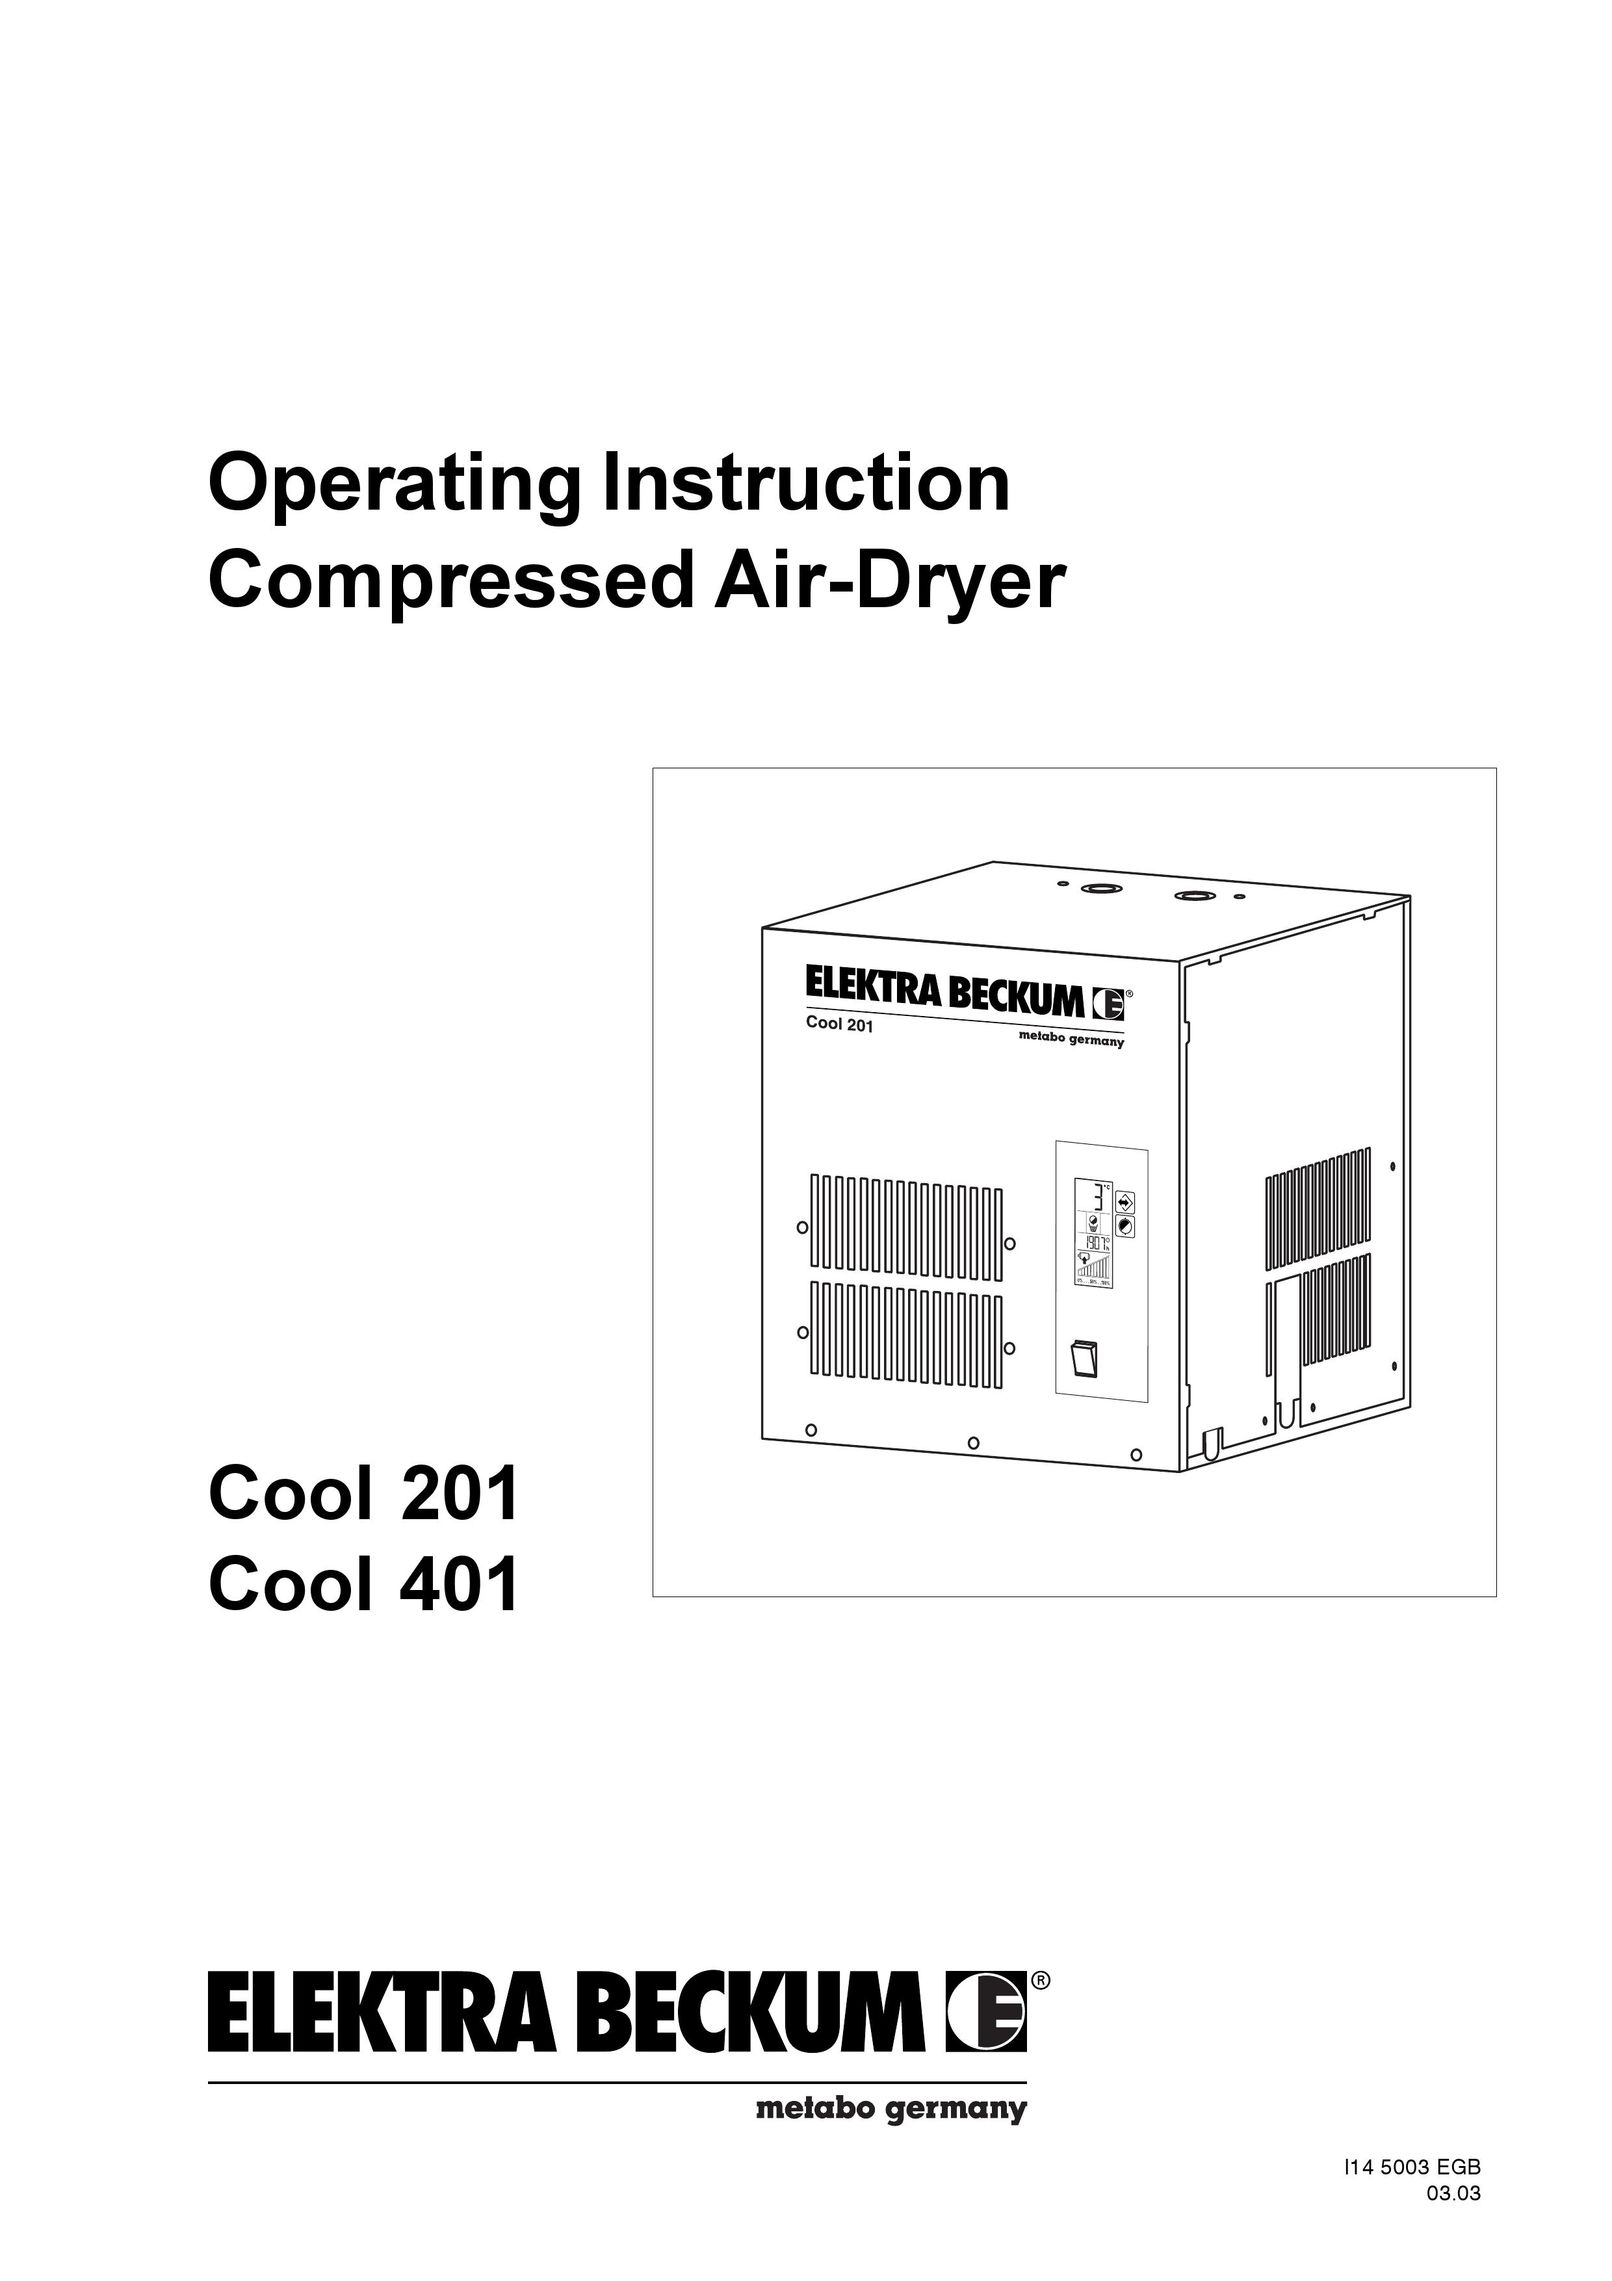 Elektra Beckum Cool 201 Air Compressor User Manual